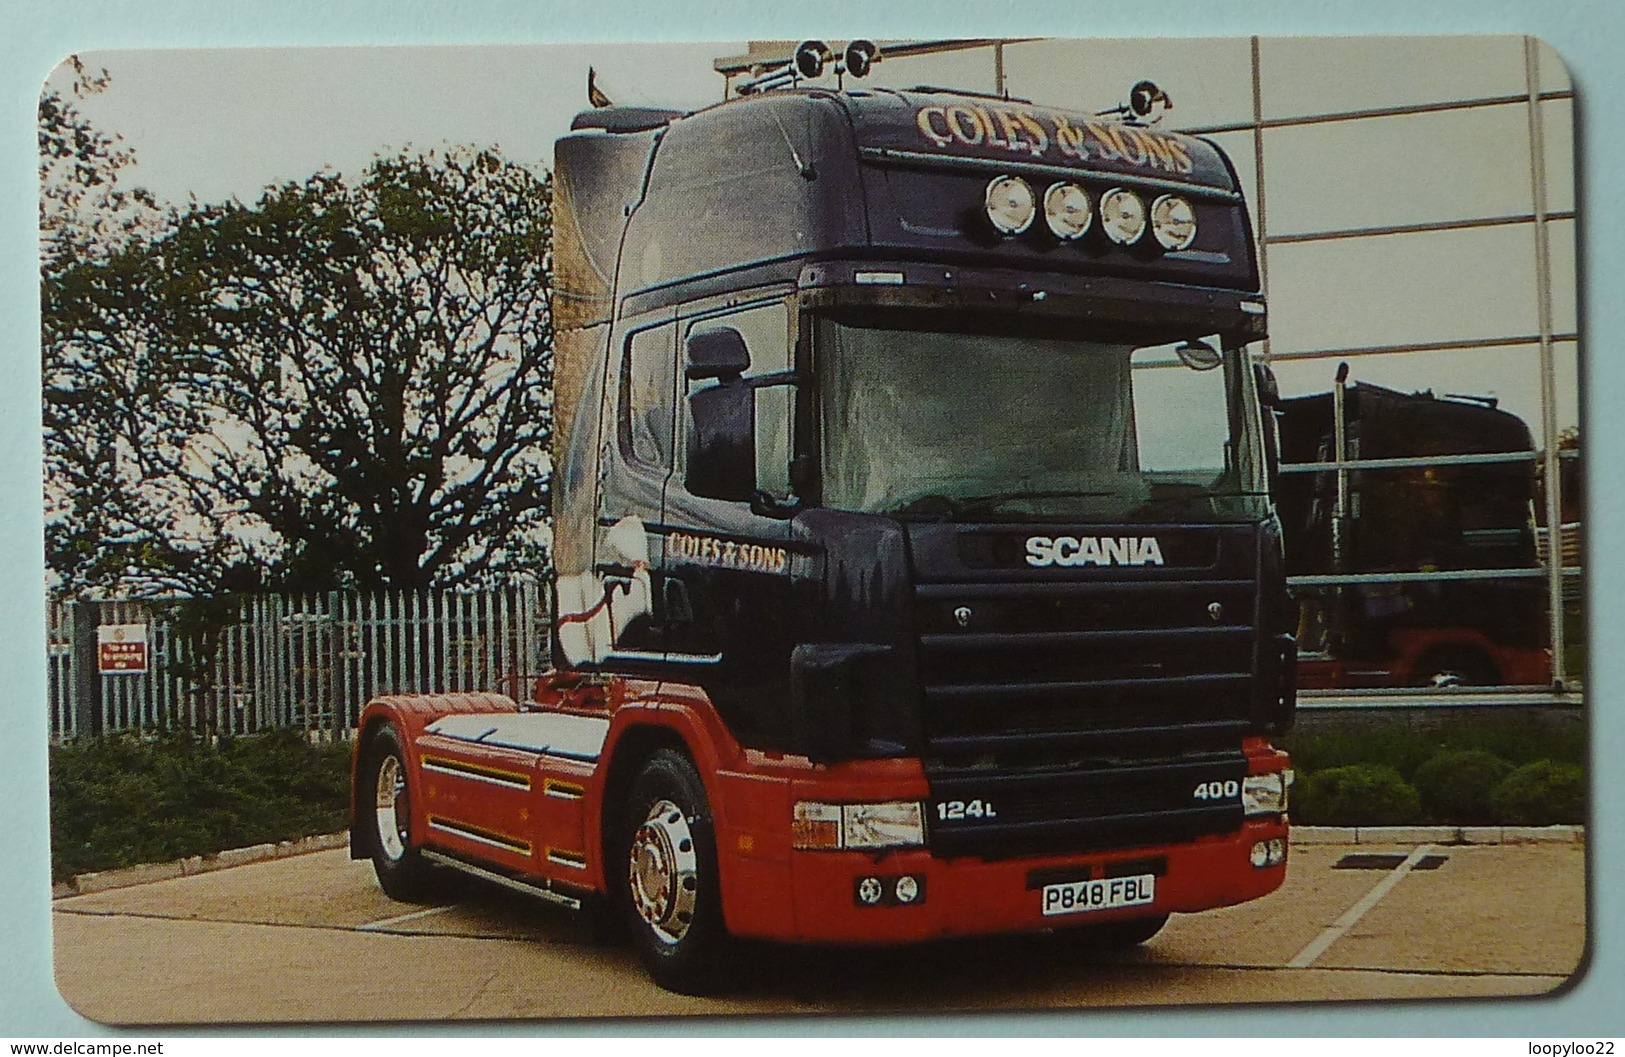 United Kingdom - BT - Chip - PRO261 - Super Trucks No 1 - Coles & Sons - 1000ex - Mint - BT Promotionnelles